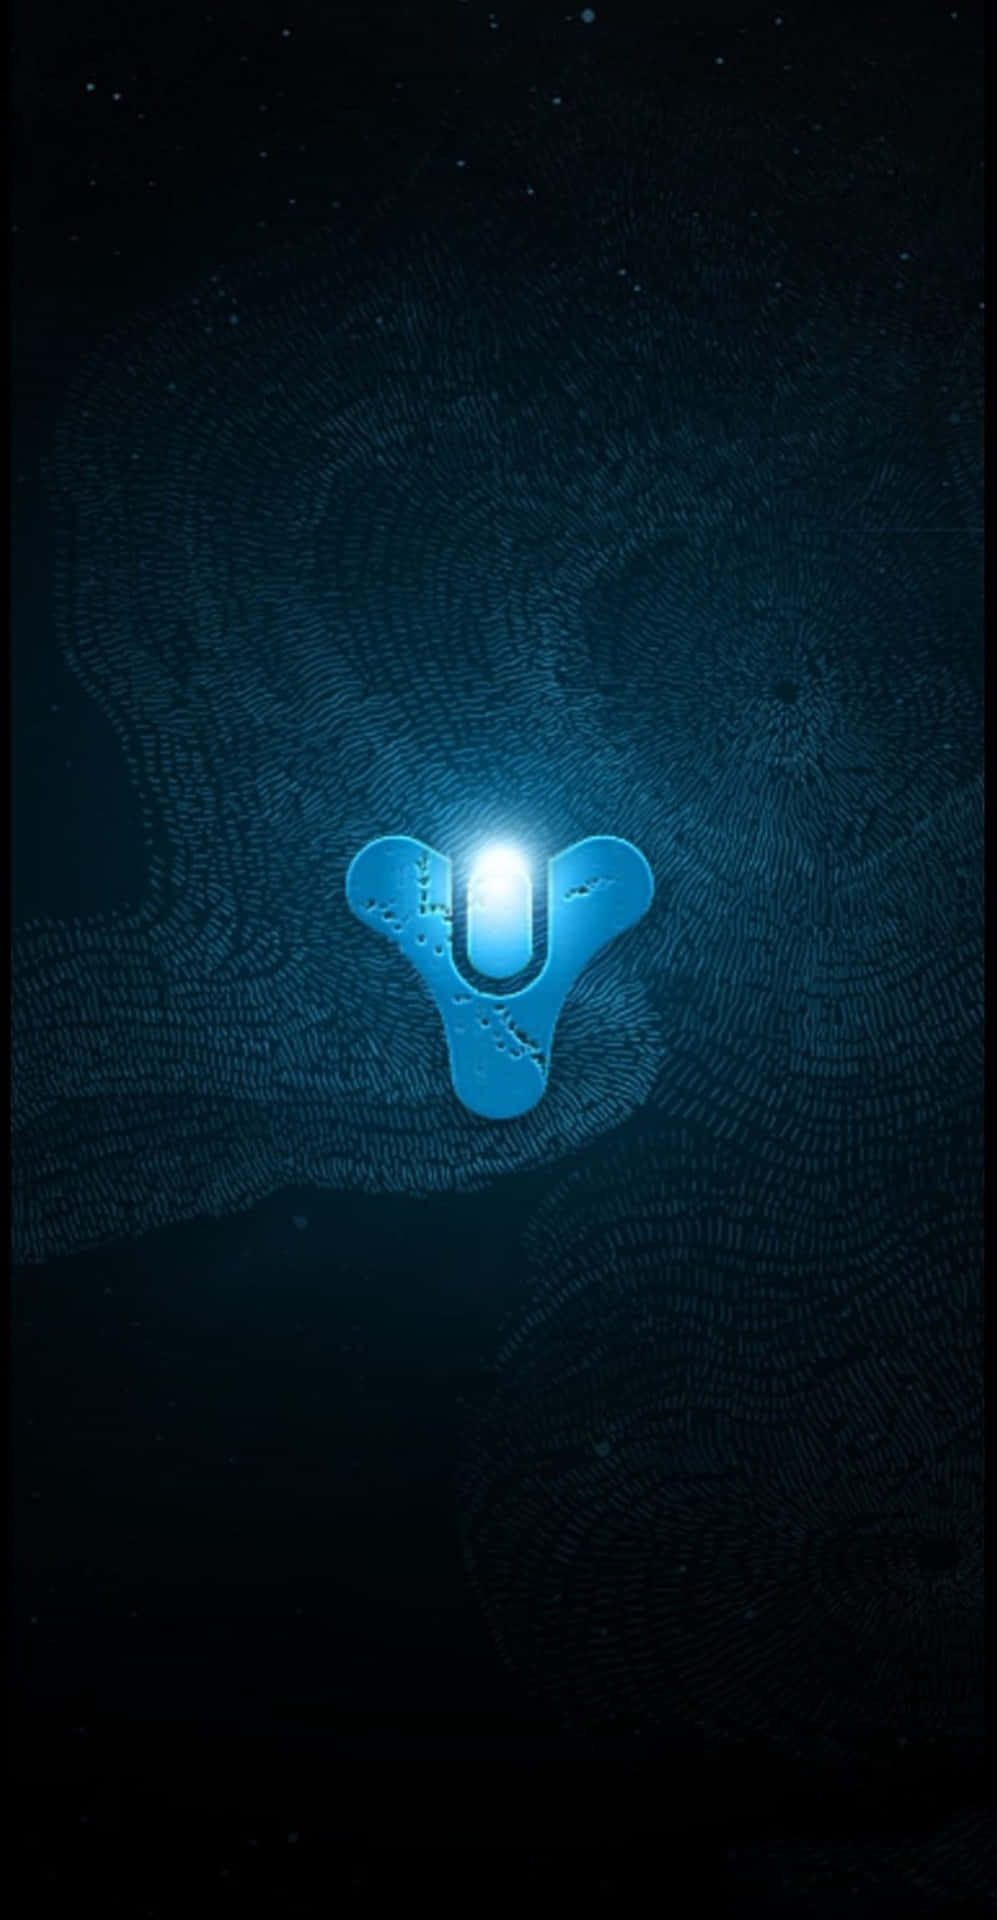 Logotiponeon Azul Do Destino. Papel de Parede